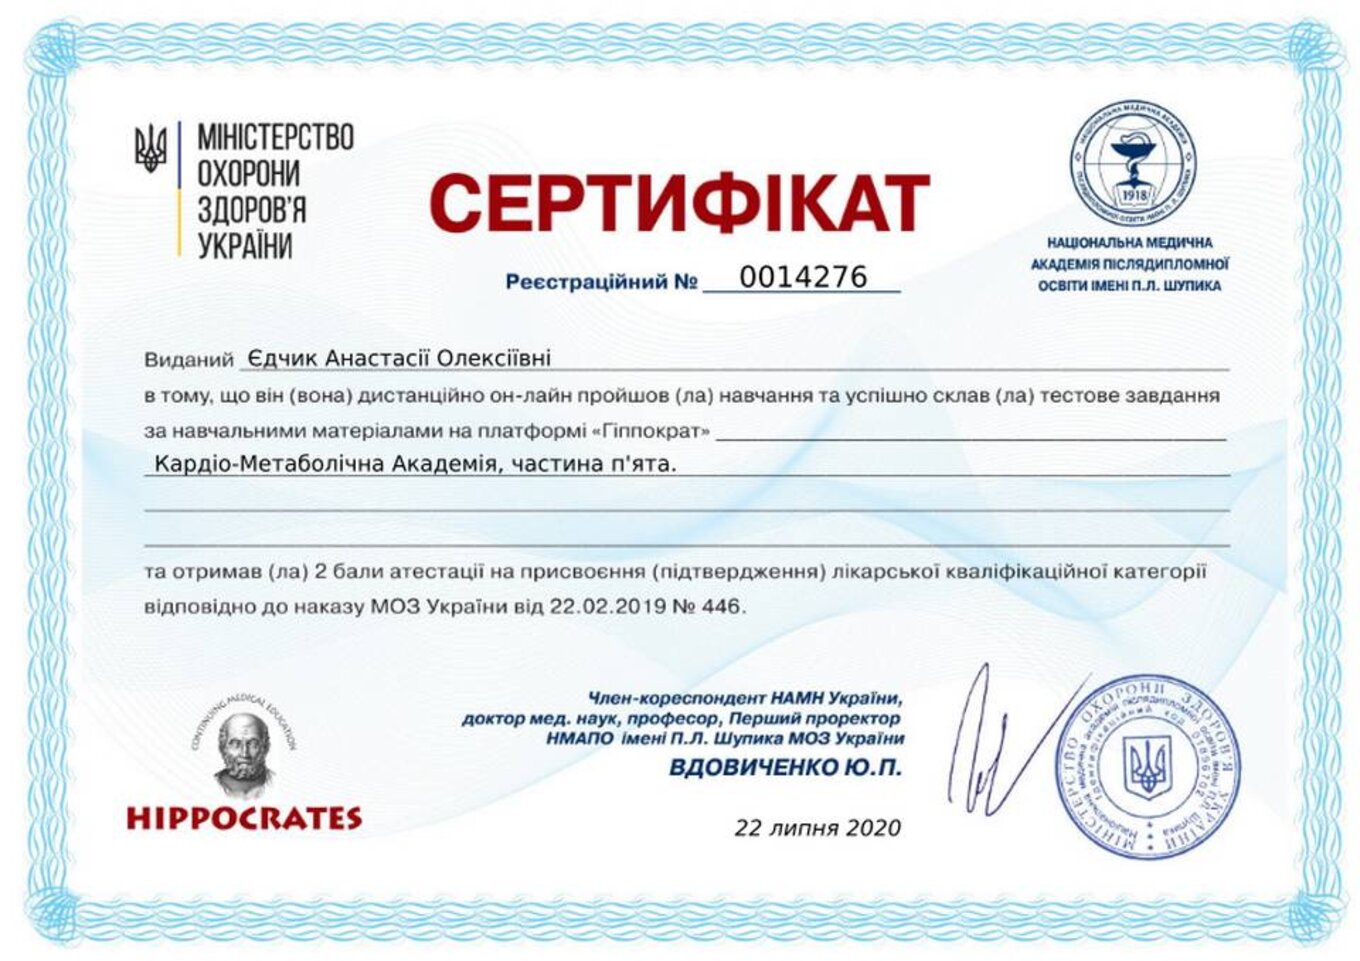 certificates/yedchik-anastasiya-oleksiyivna/erc-edchik-cert-65.jpg